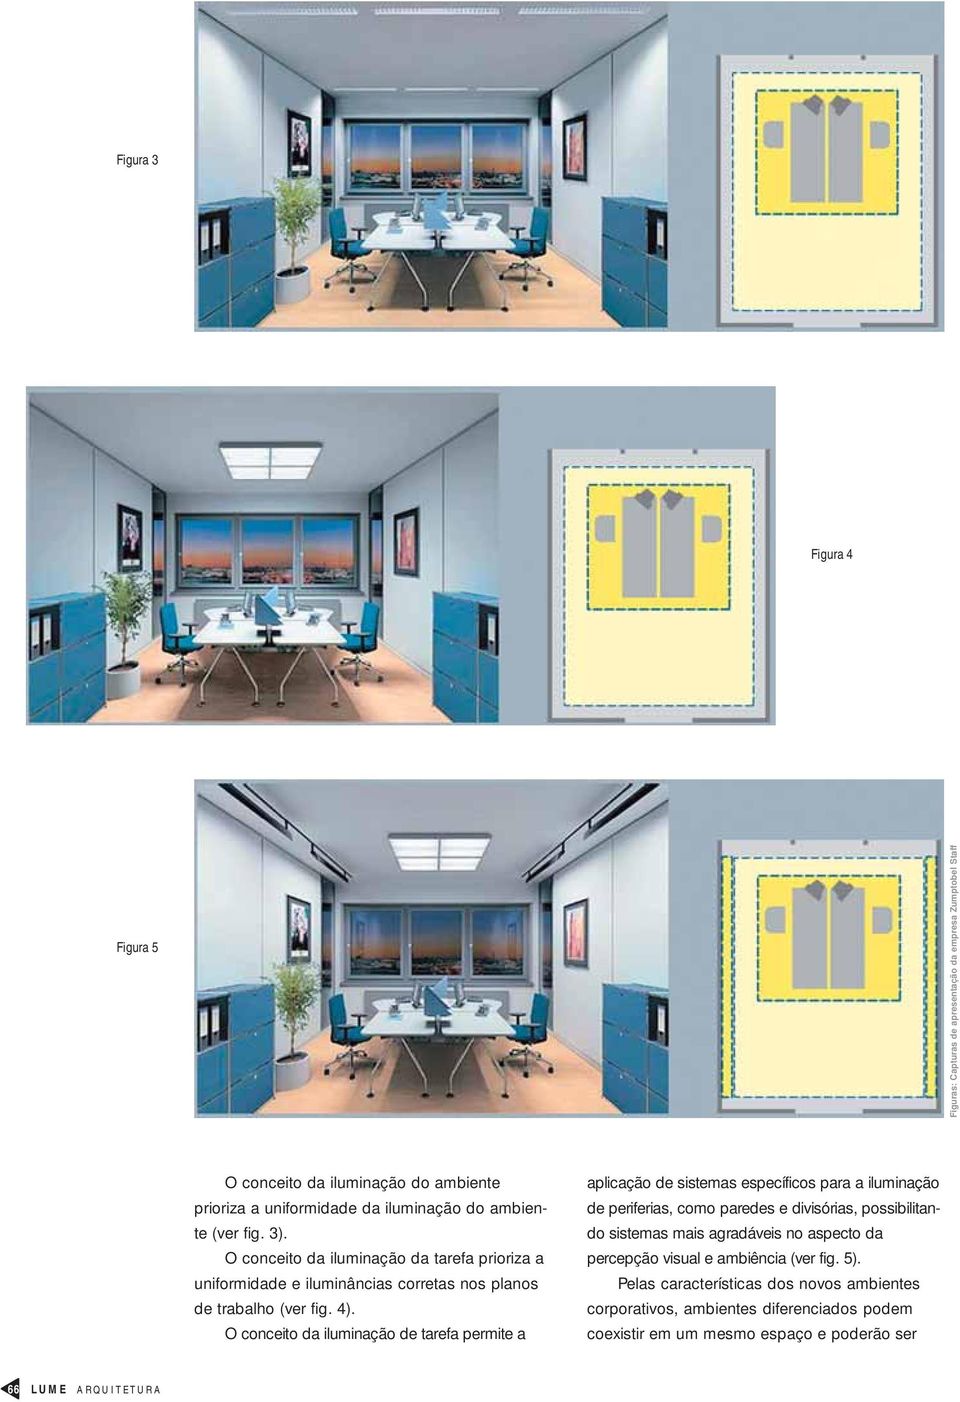 O conceito da iluminação de tarefa permite a aplicação de sistemas específicos para a iluminação de periferias, como paredes e divisórias, possibilitando sistemas mais